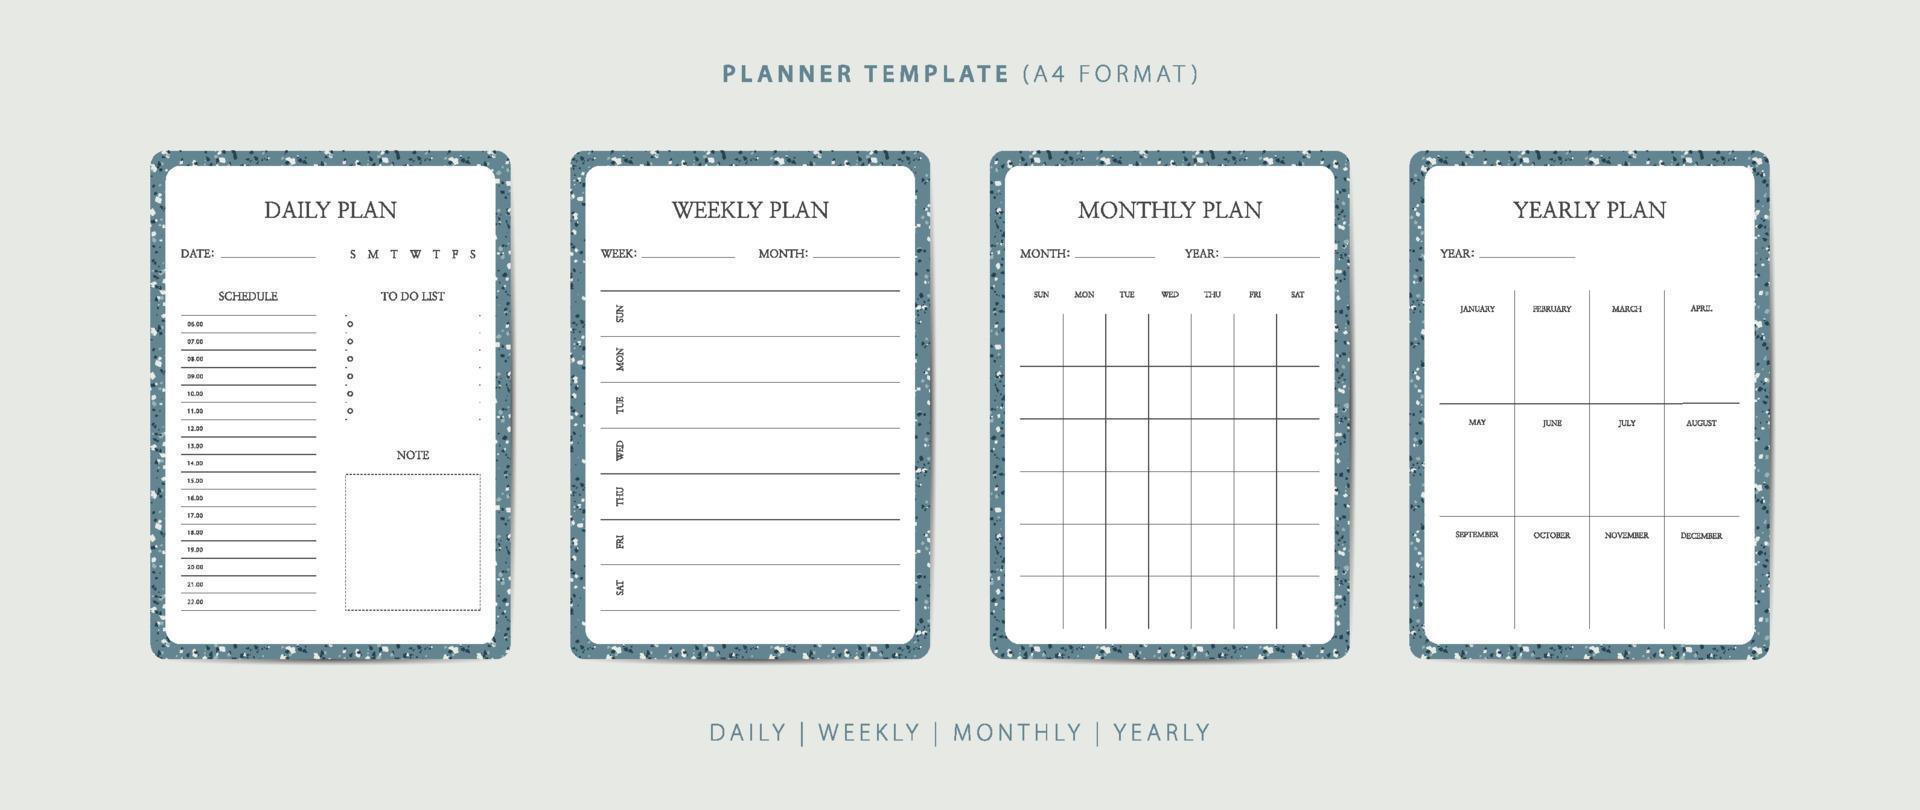 ensemble de modèles minimalistes de planificateur quotidien, hebdomadaire, mensuel et annuel avec motif terrazzo vecteur